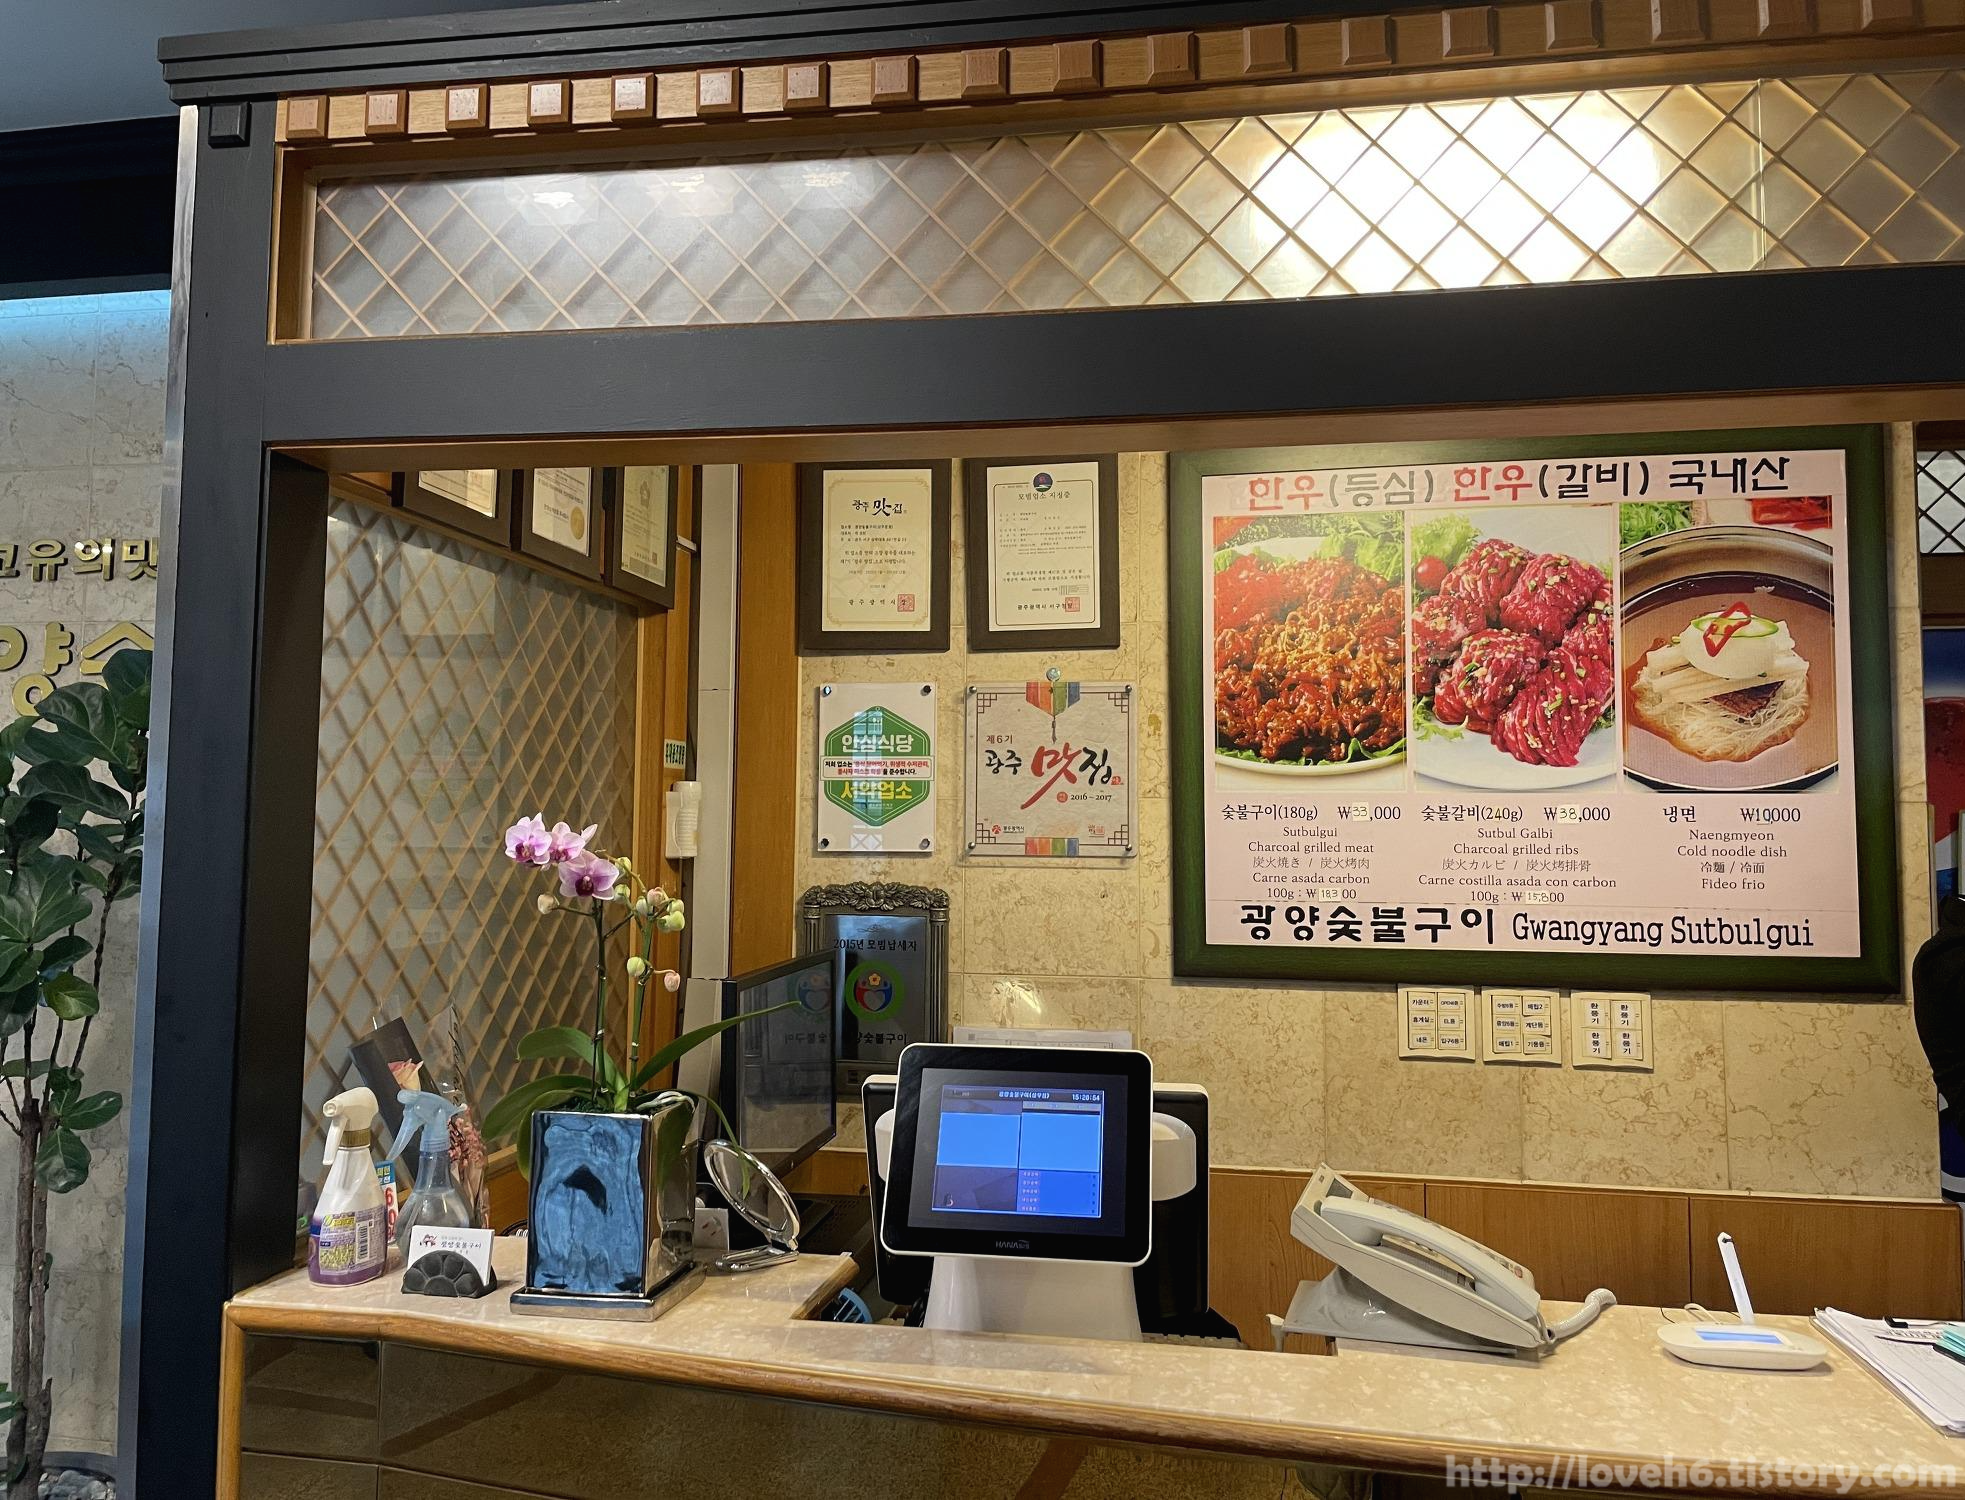 광양숯불구이 상무본점/Gwangyang Charcoal Grilled Sangmu Main Branch/그럼 한 바퀴 돌아보겠습니다

계산대가 보이고